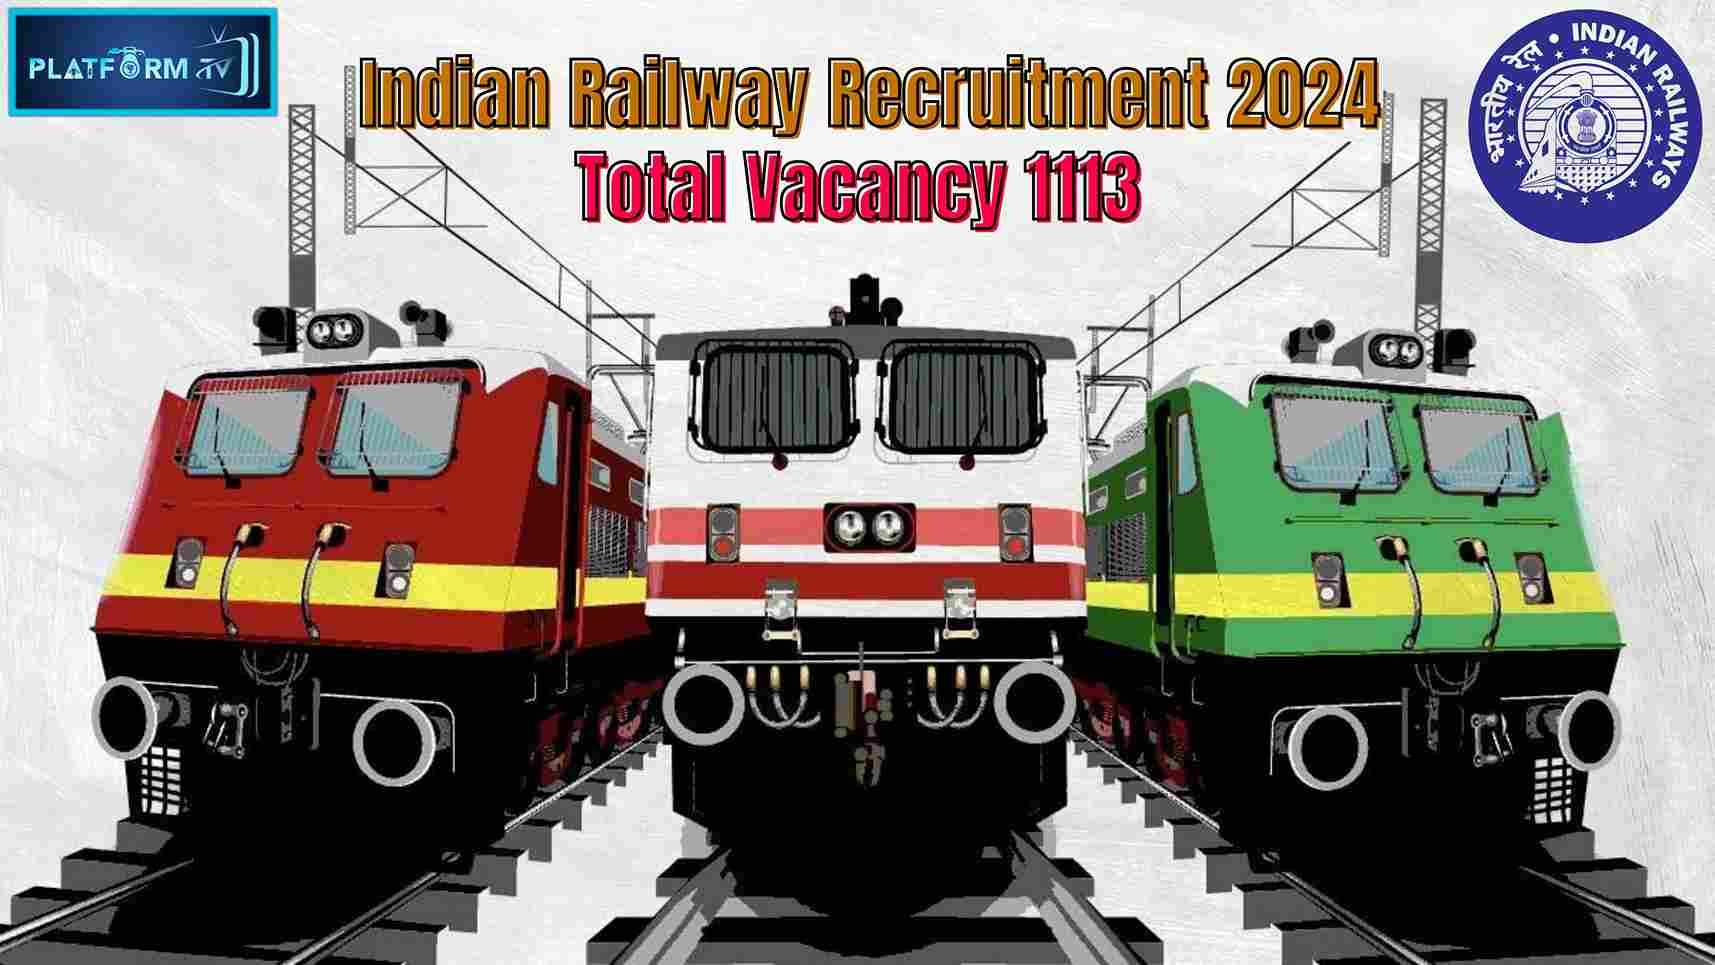 Railway Jobs 2024 - Platform Tamil